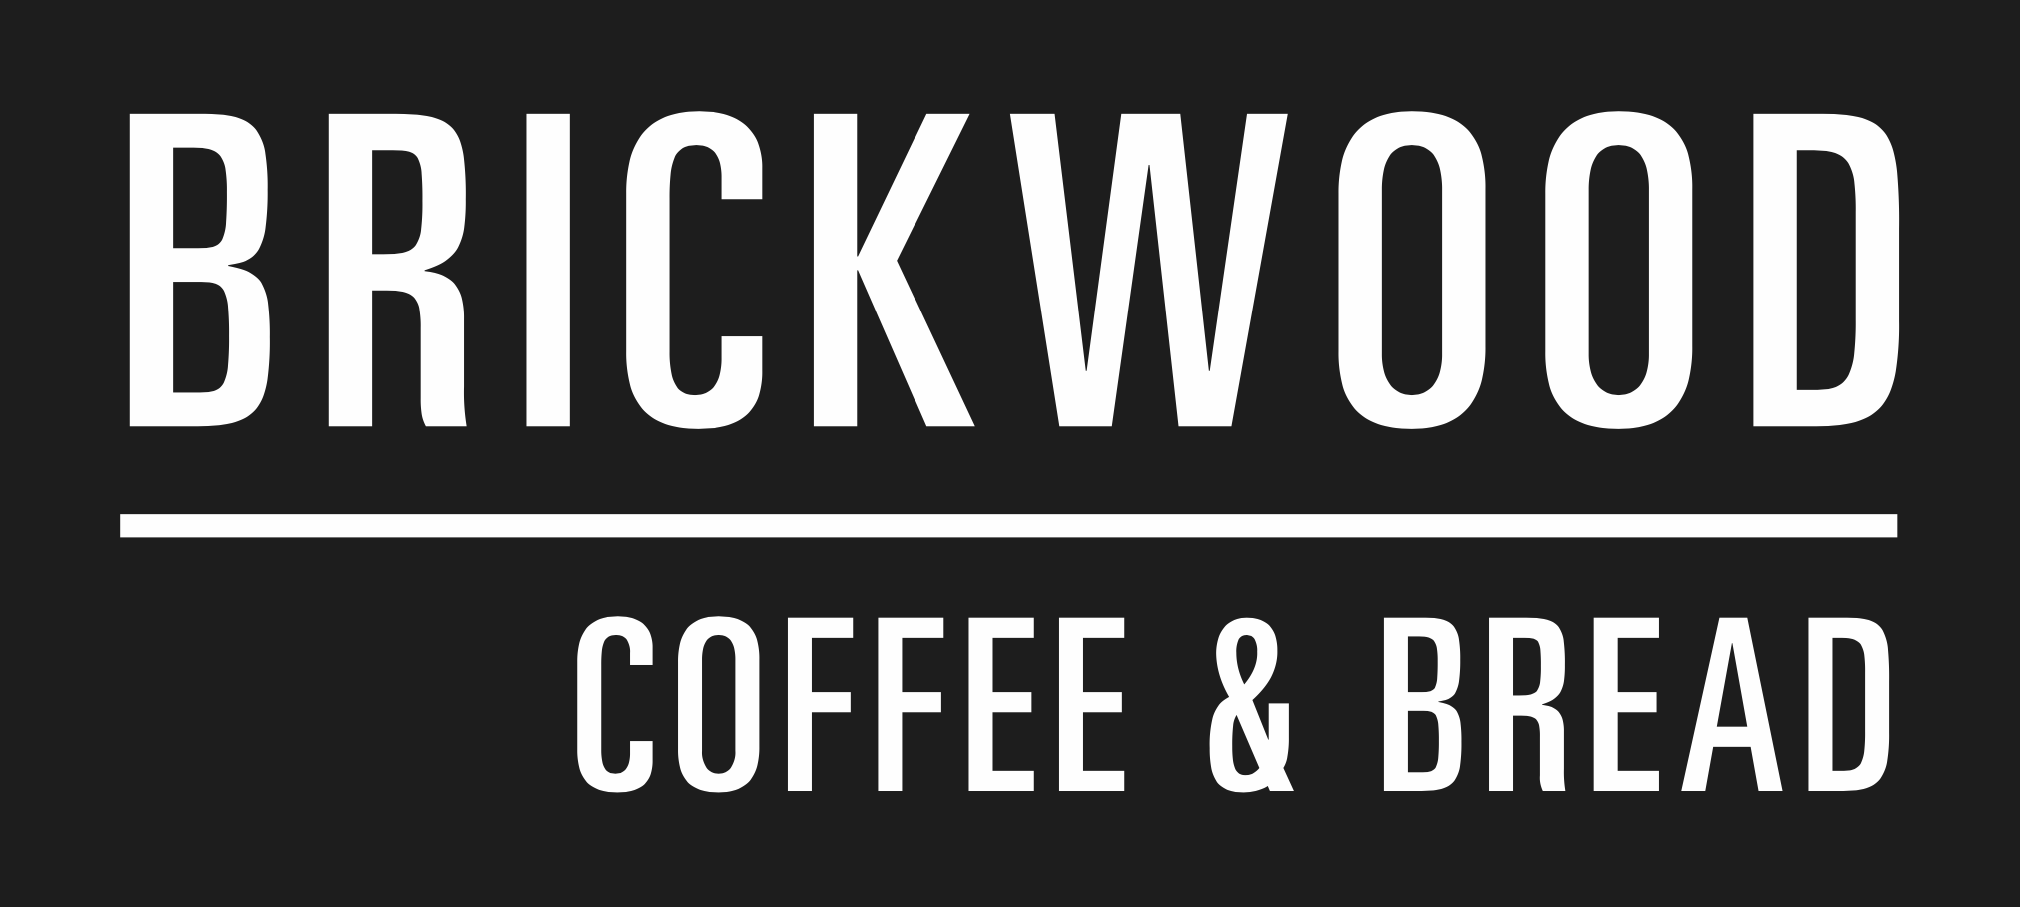 Brickwood Logo